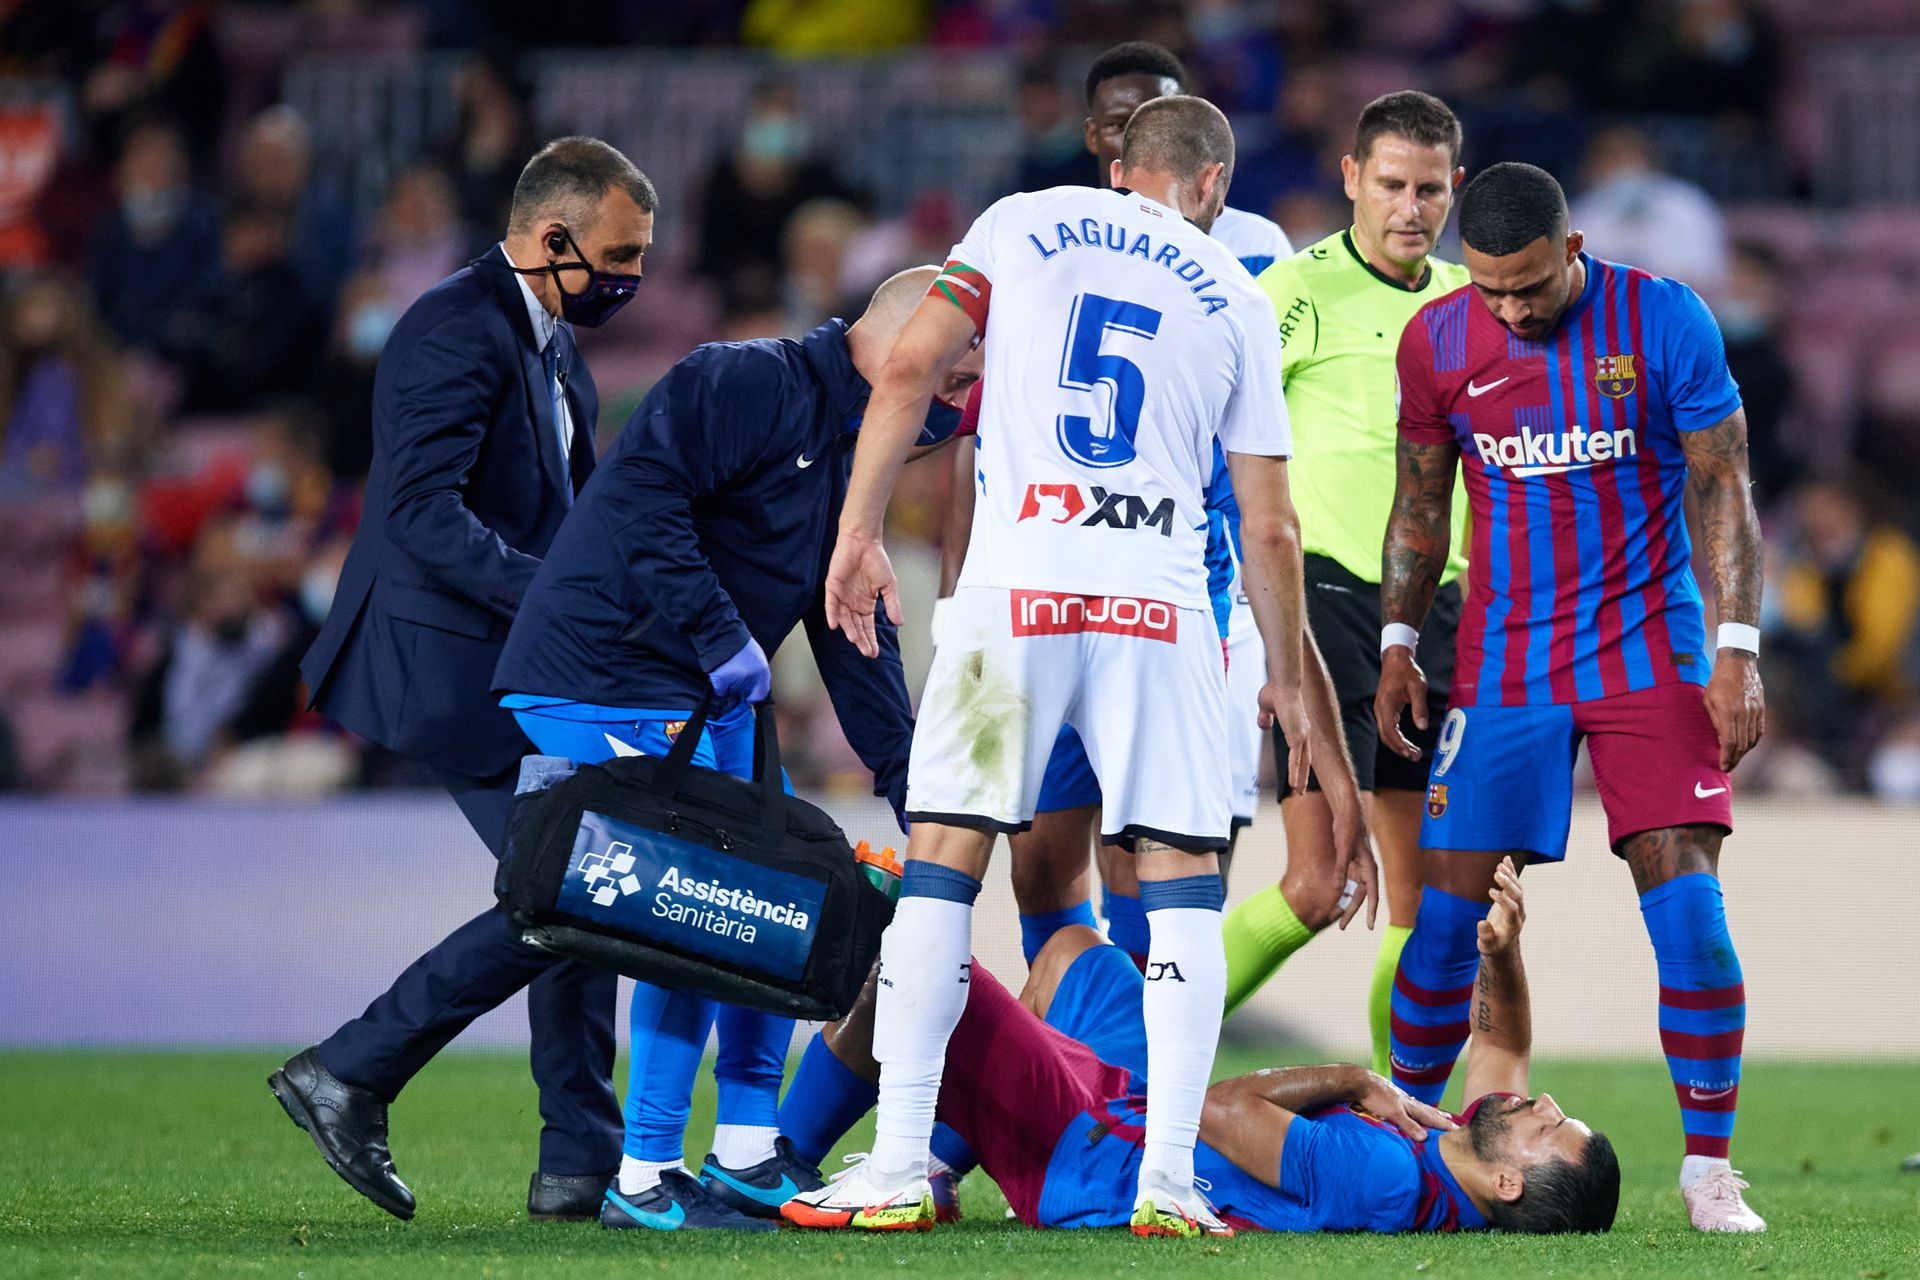 Agüero az Alavés elleni bajnokin, a pályán lett rosszul. Súlyos szívproblémái vannak, így nem focizhat a Barca sztárja /Fotó: Getty Images